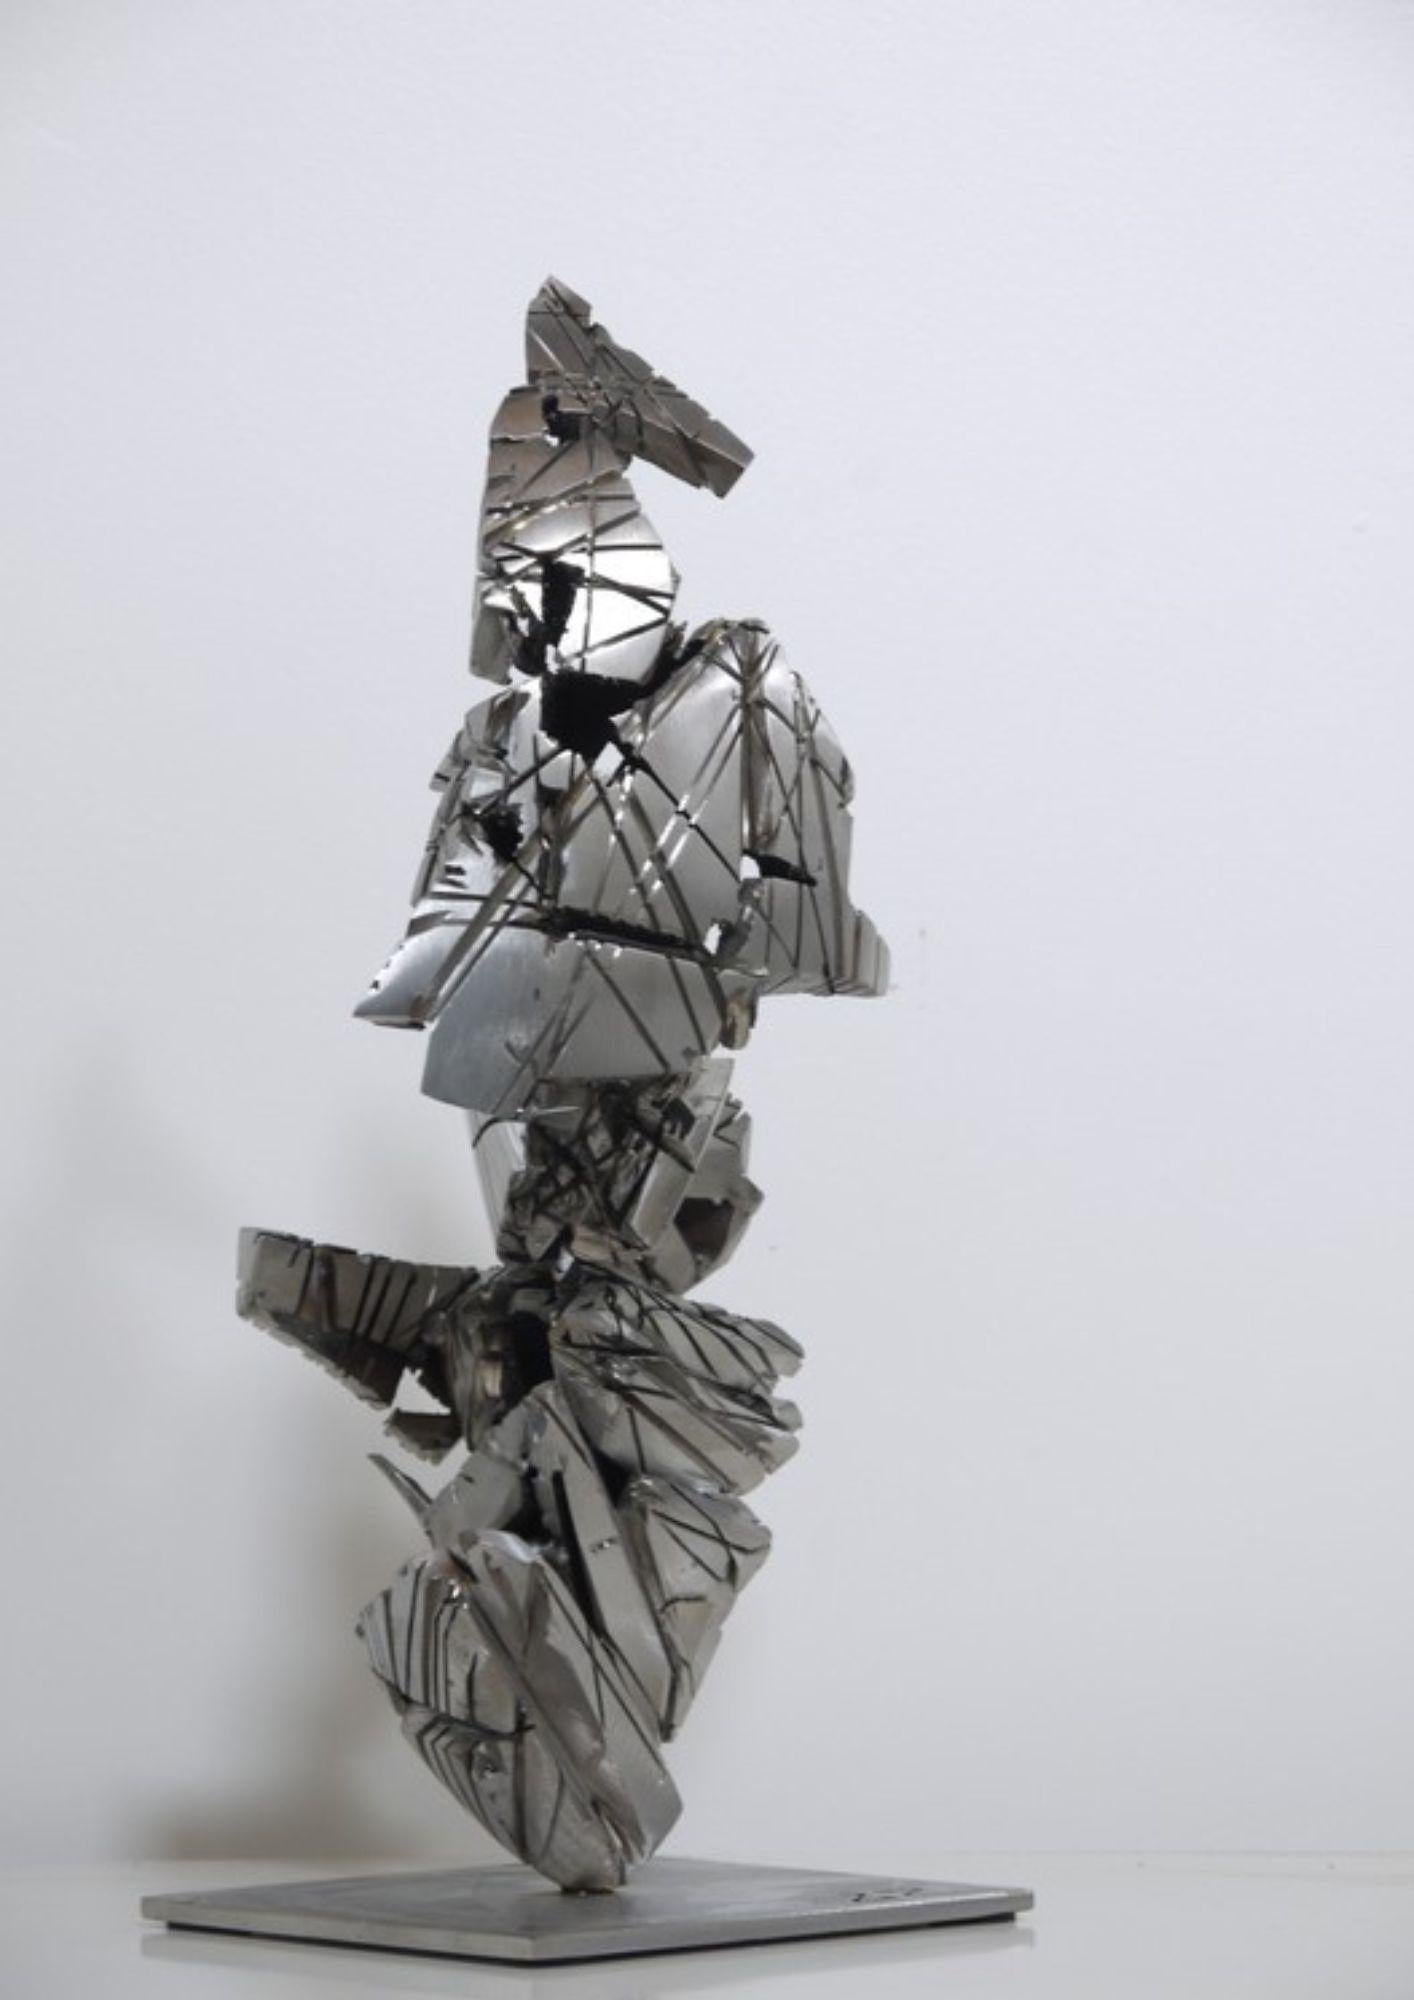 
La sculpture Steele 8 est une œuvre artistique en acier inoxydable qui incarne le concept de souffle de feu et d'énergie de fusion. Les lignes et les formes harmonieuses de la sculpture évoquent l'esthétique du minéral ferreux, offrant une vision